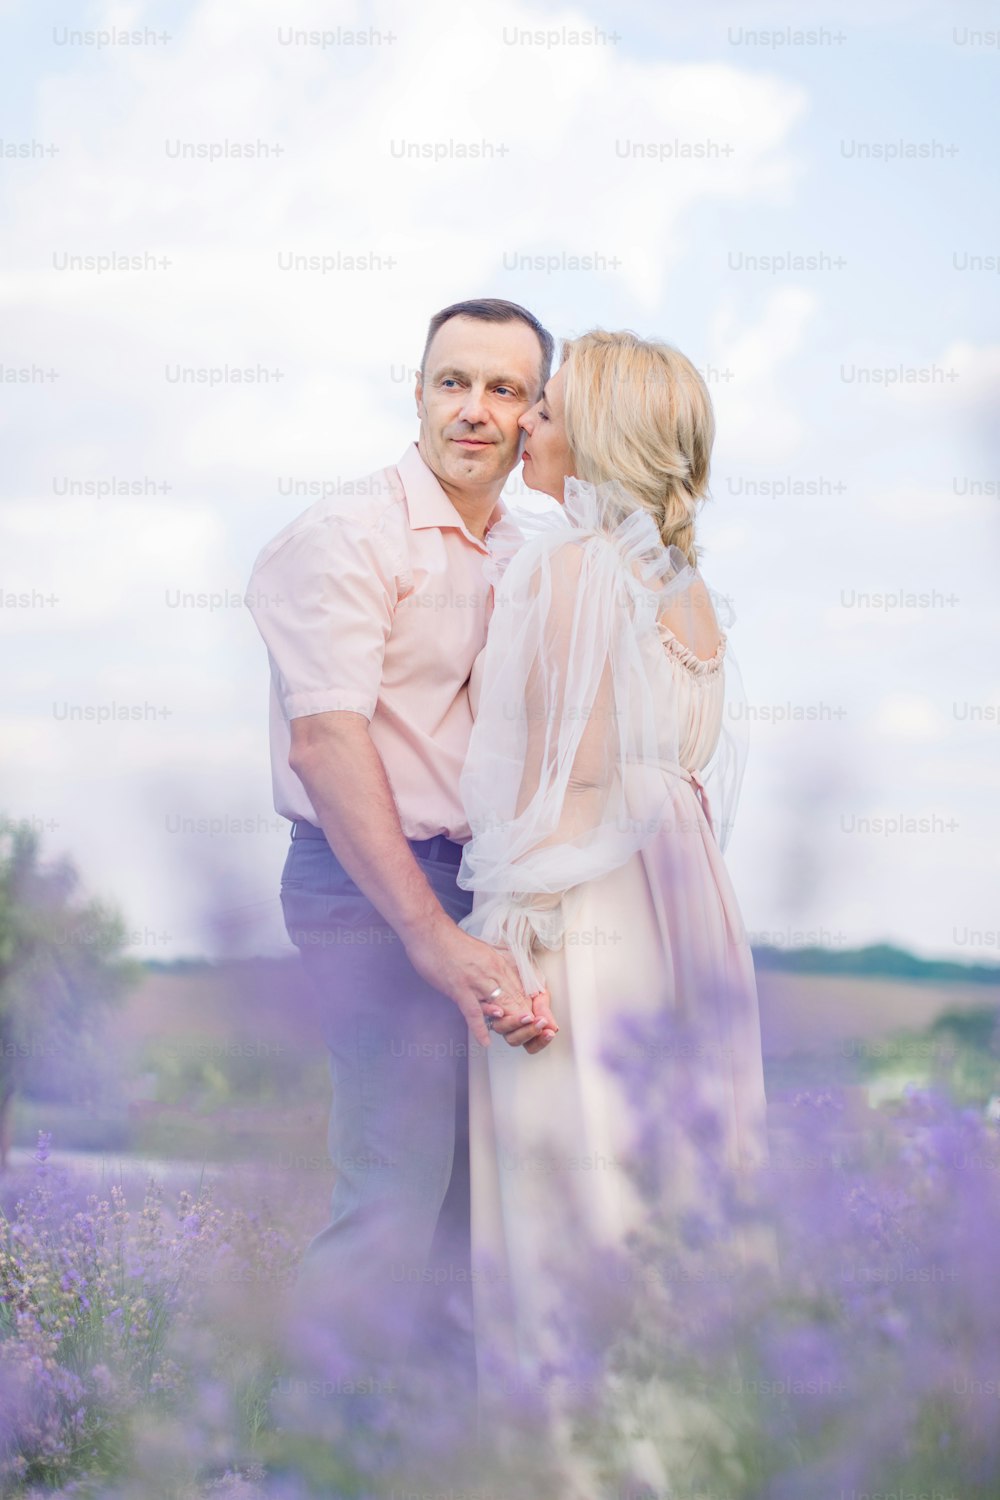 Blick durch die Lavendelblüten. Glückliches Paar mittleren Alters, Mann und Frau in eleganten Outfits, umarmen und genießen romantische Momente zusammen im Lavendelfeld